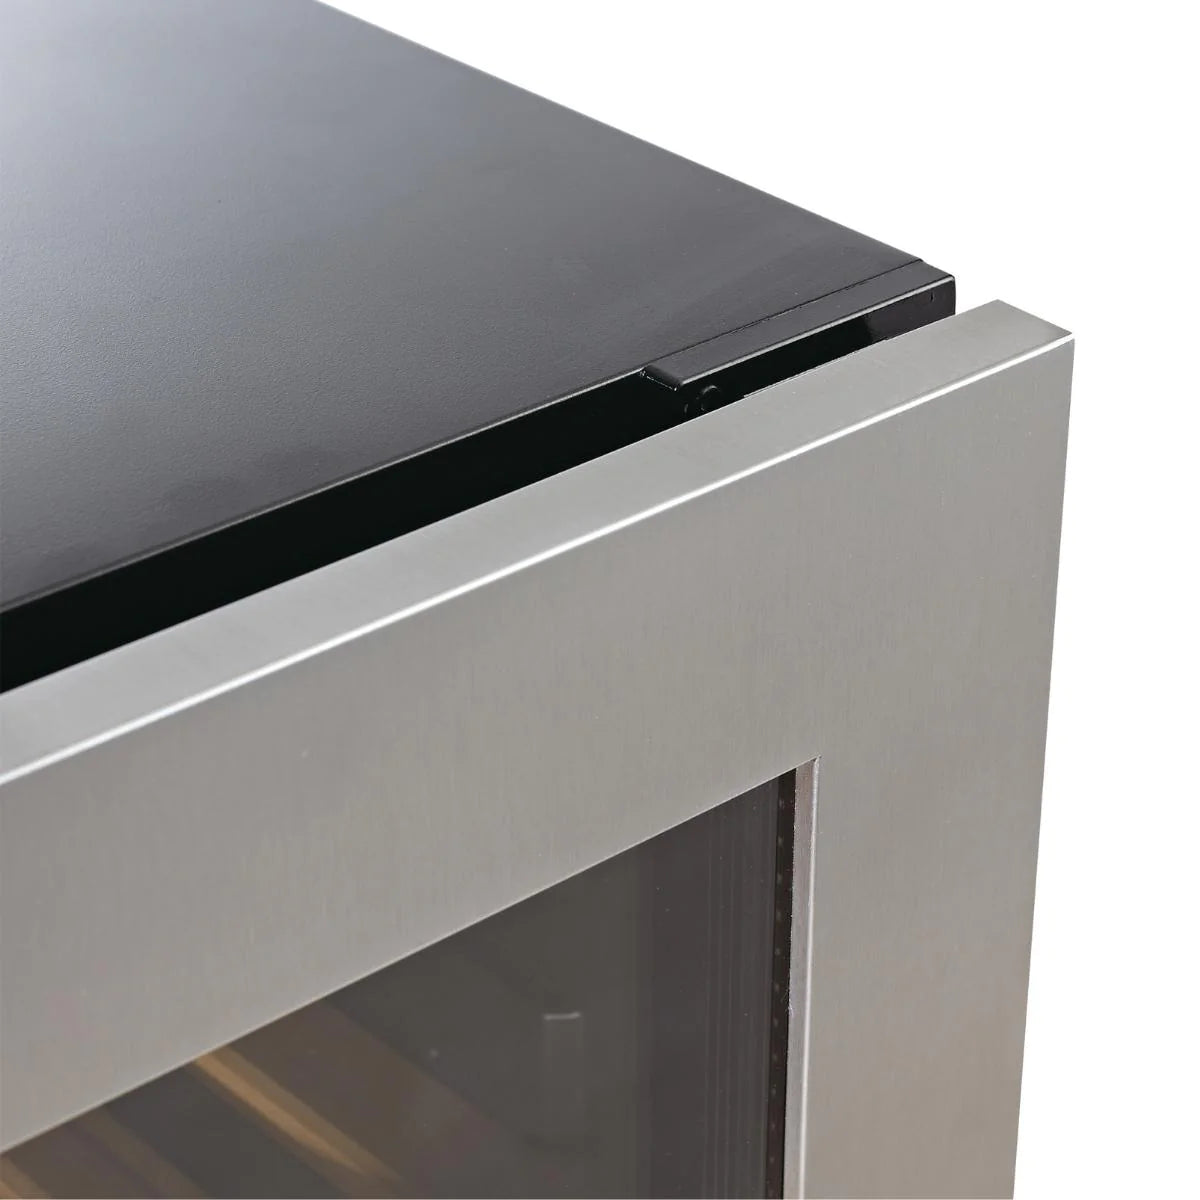 425 Litre Upright Low-E Glass Door Bar Refrigerator